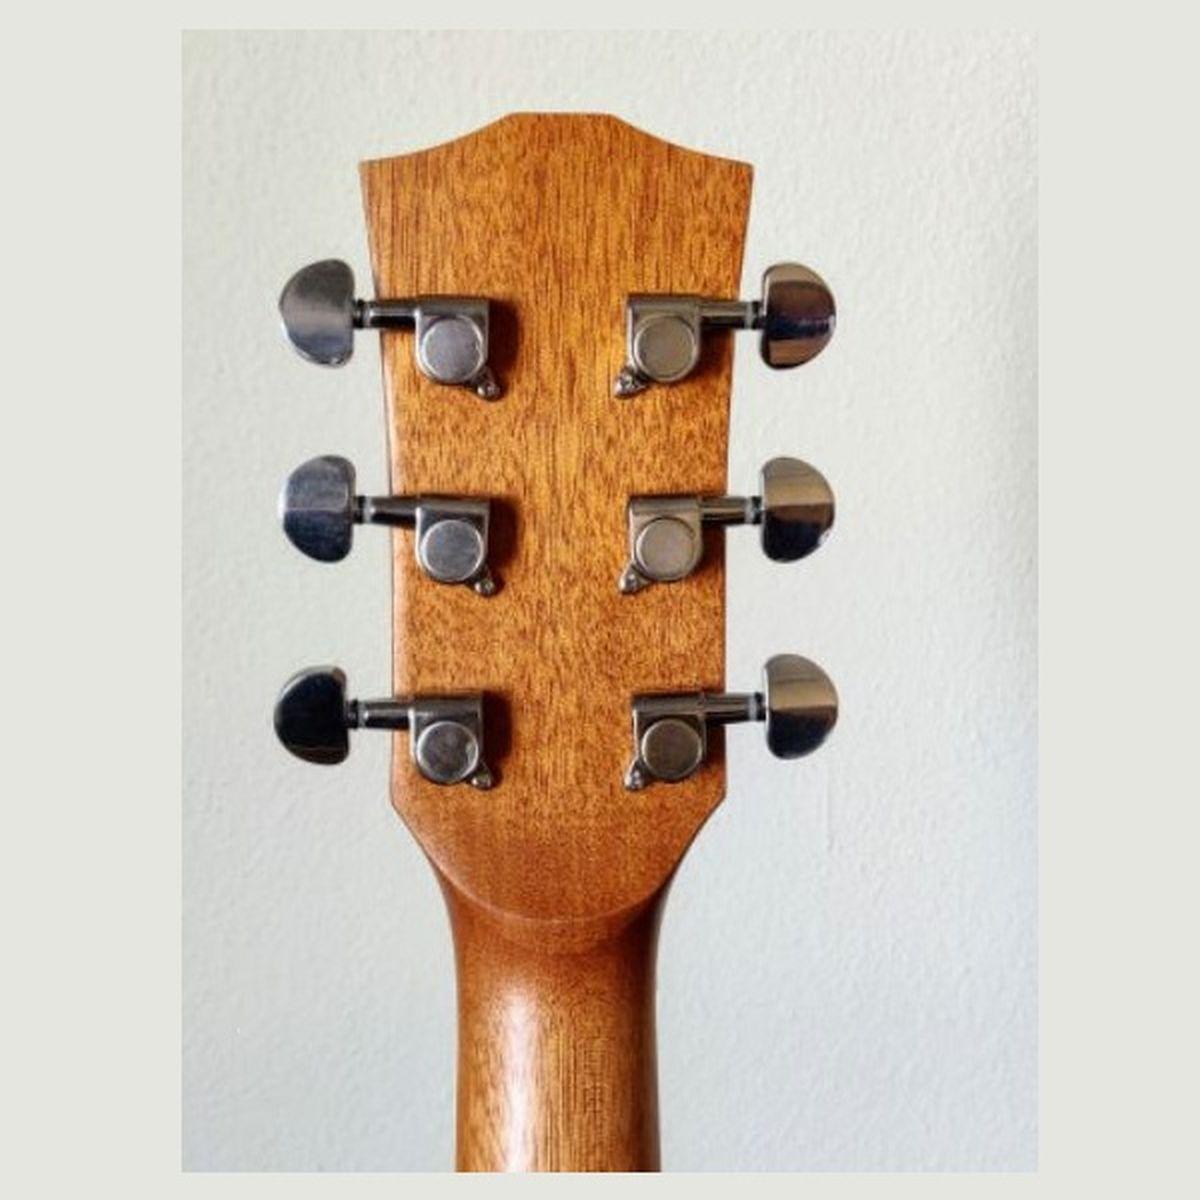 Vermont f100ce-n chitarra acustica folk elettrificata cutaway natural